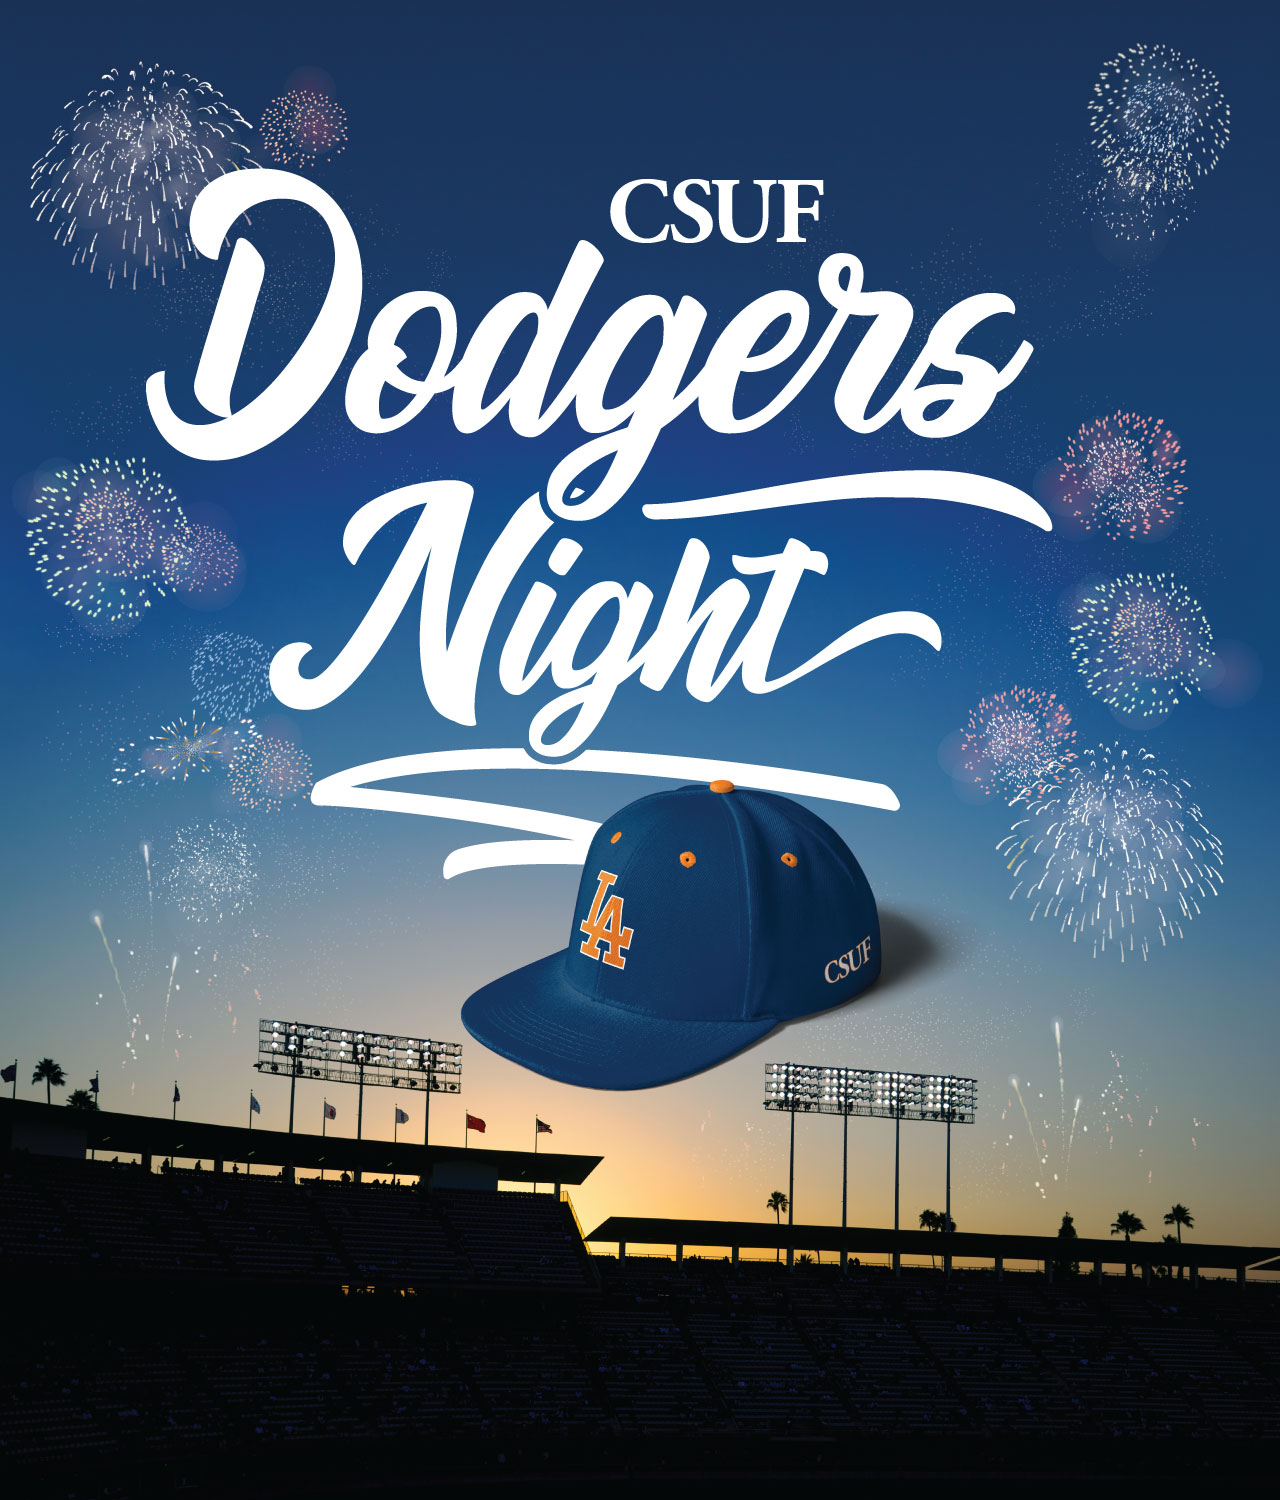 Dodgers Night Alumni CSUF